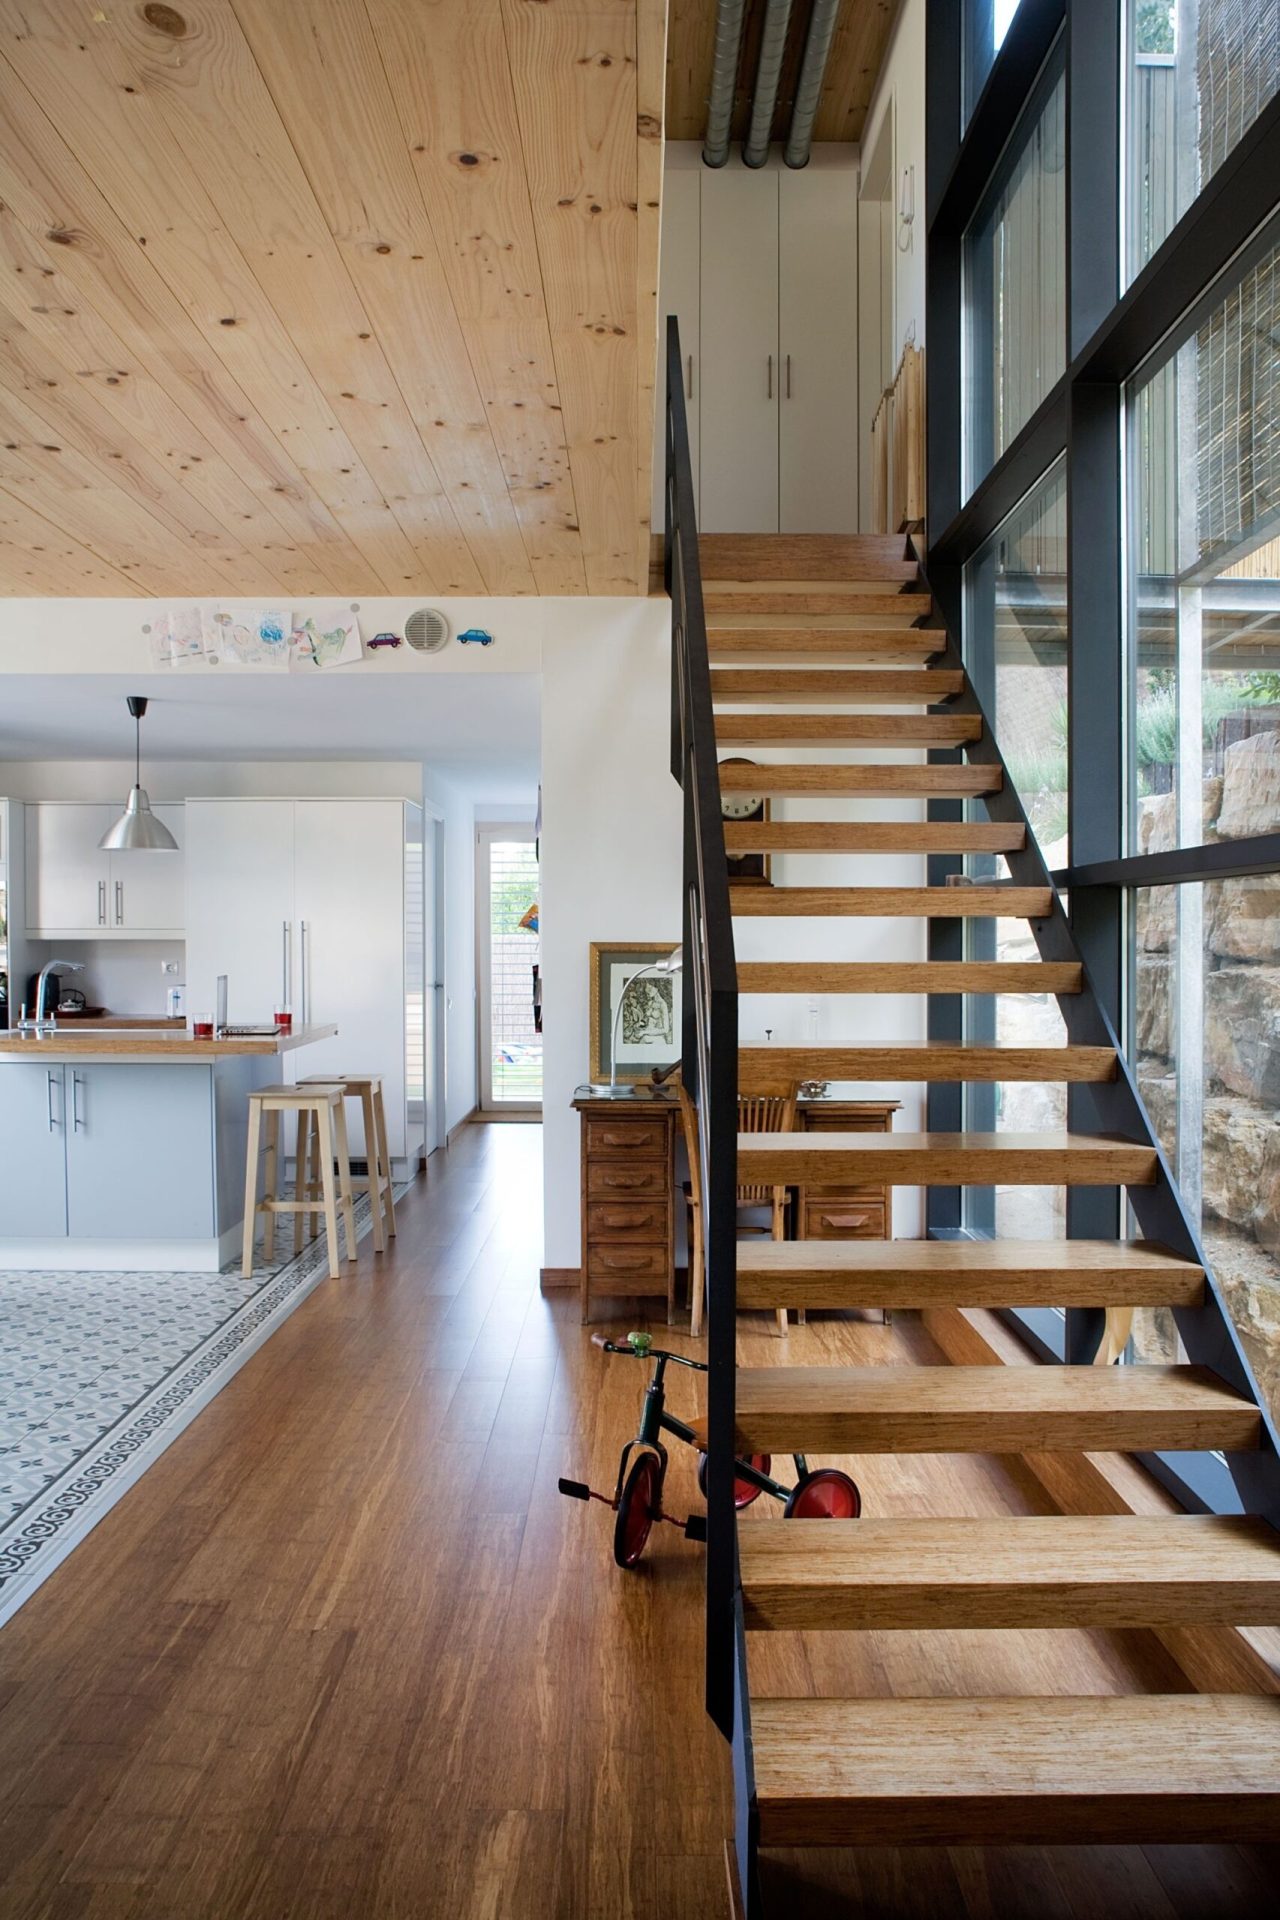 Apartament amb escales de fusta i metall